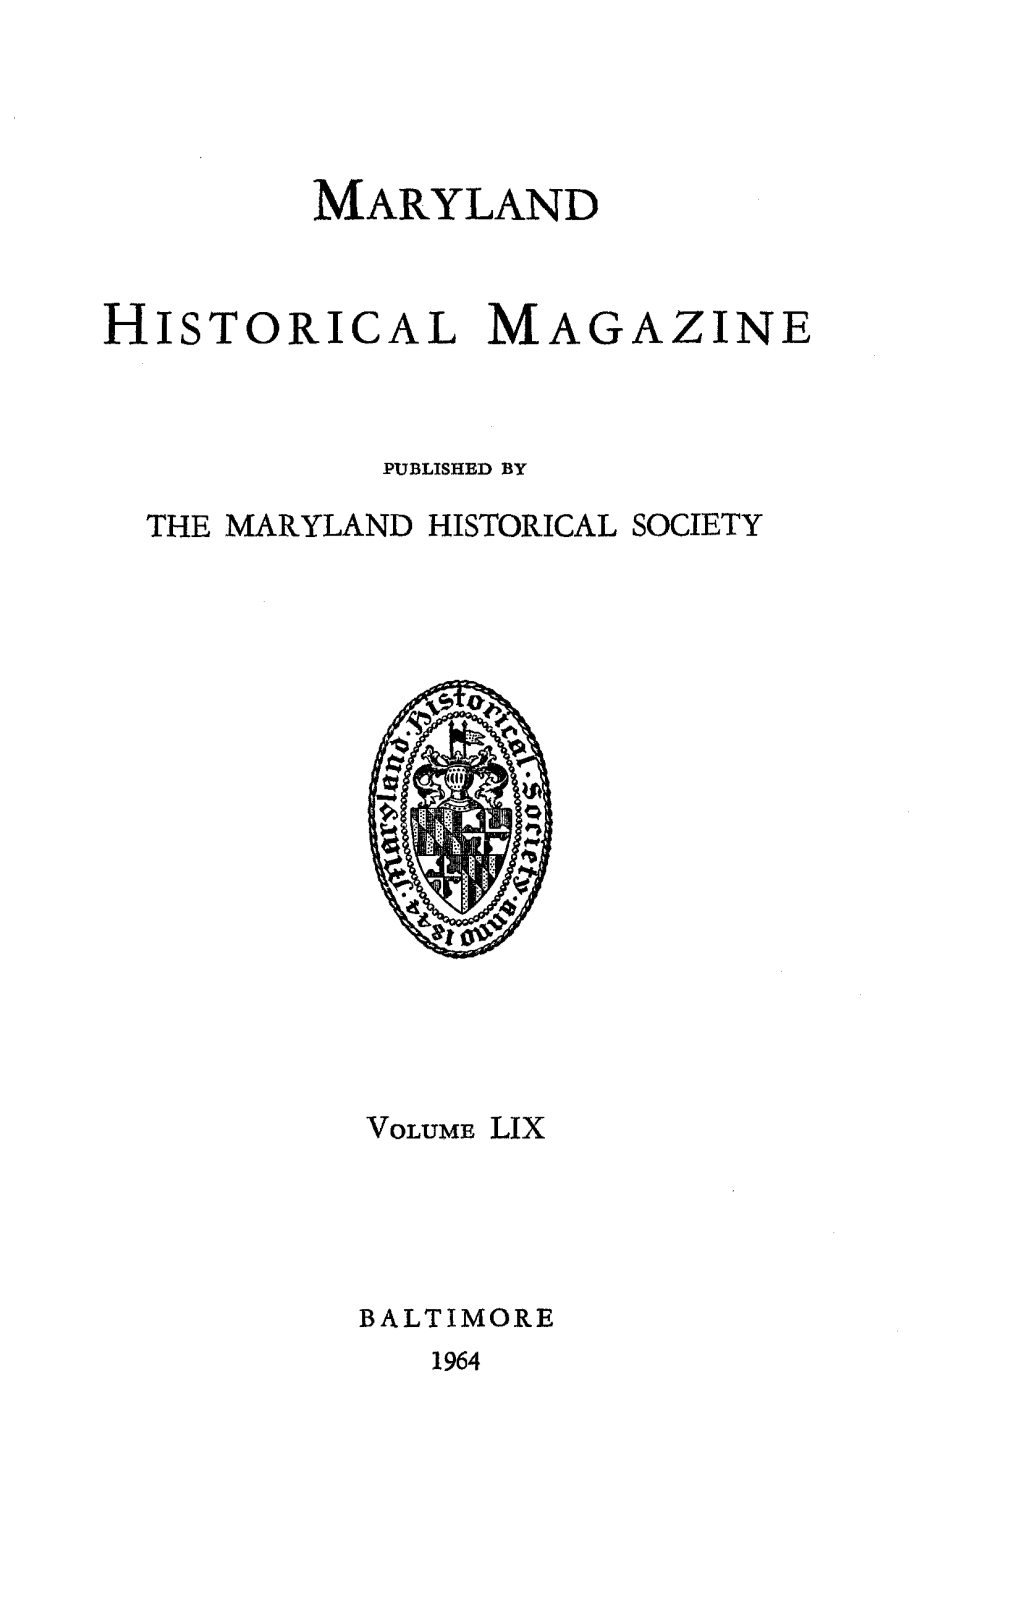 Maryland Historical Magazine 59